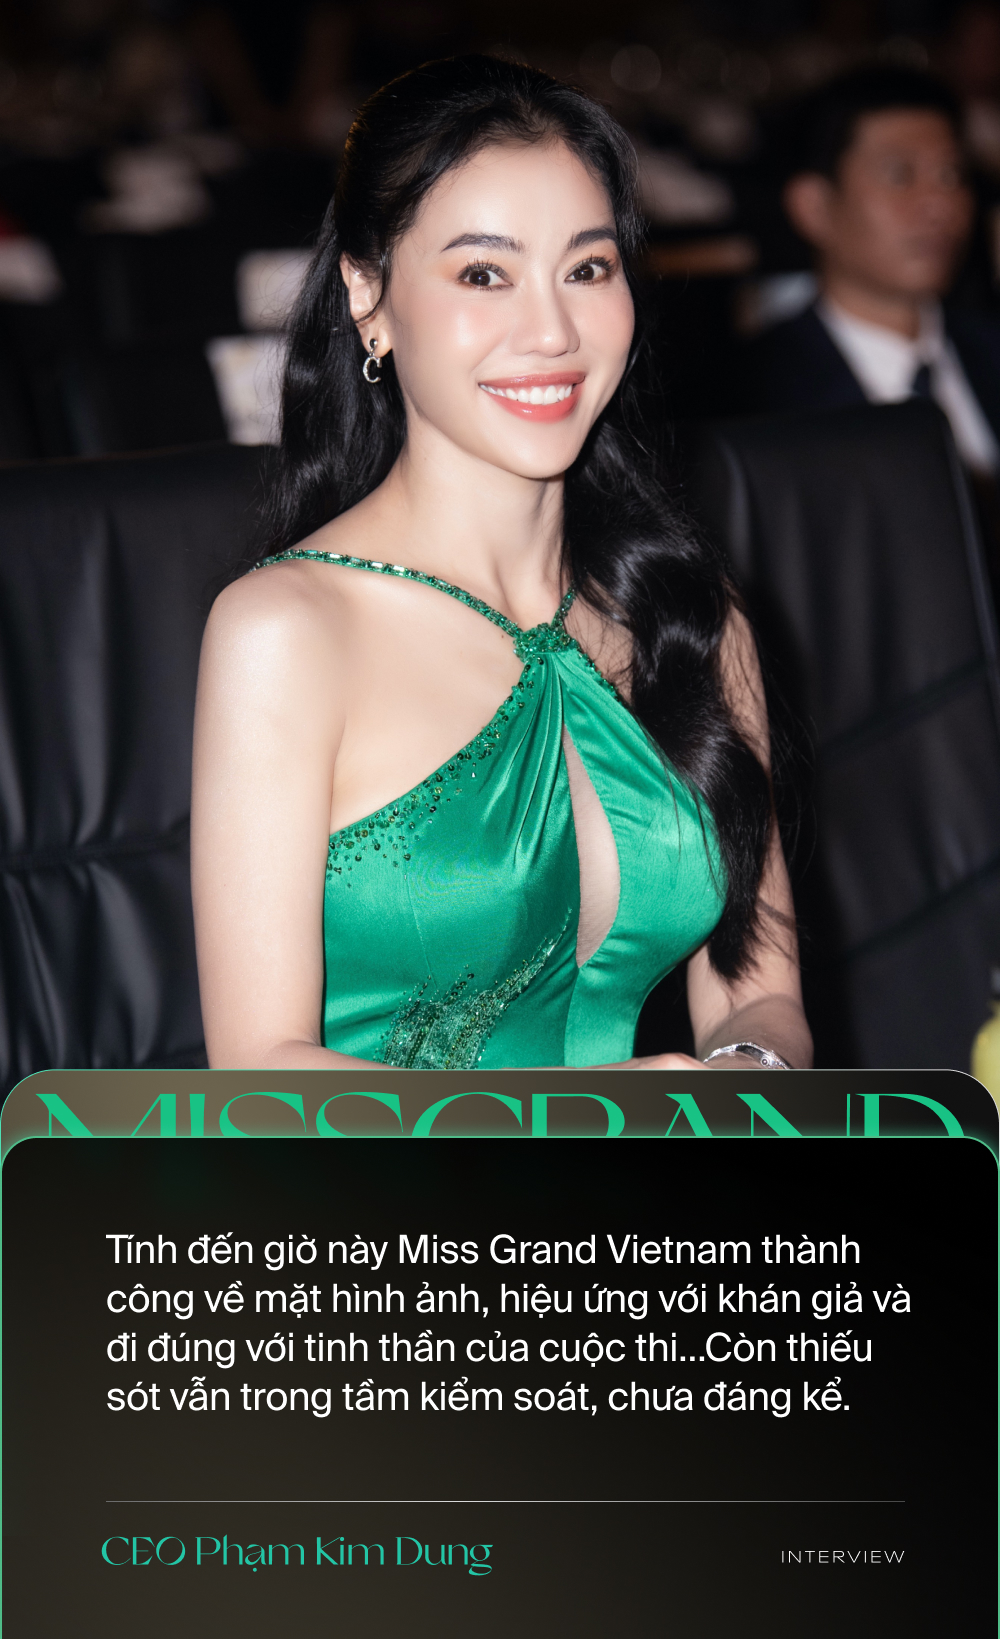 Miss Grand Vietnam, nụ cười tỏa nắng, vẻ đẹp tinh khôi và tự tin sẽ thu hút mọi ánh nhìn. Bức ảnh của Miss Grand Vietnam là một trong những khoảnh khắc đáng nhớ nhất, thể hiện sự đẹp tự nhiên và sức sống của người phụ nữ Việt Nam.